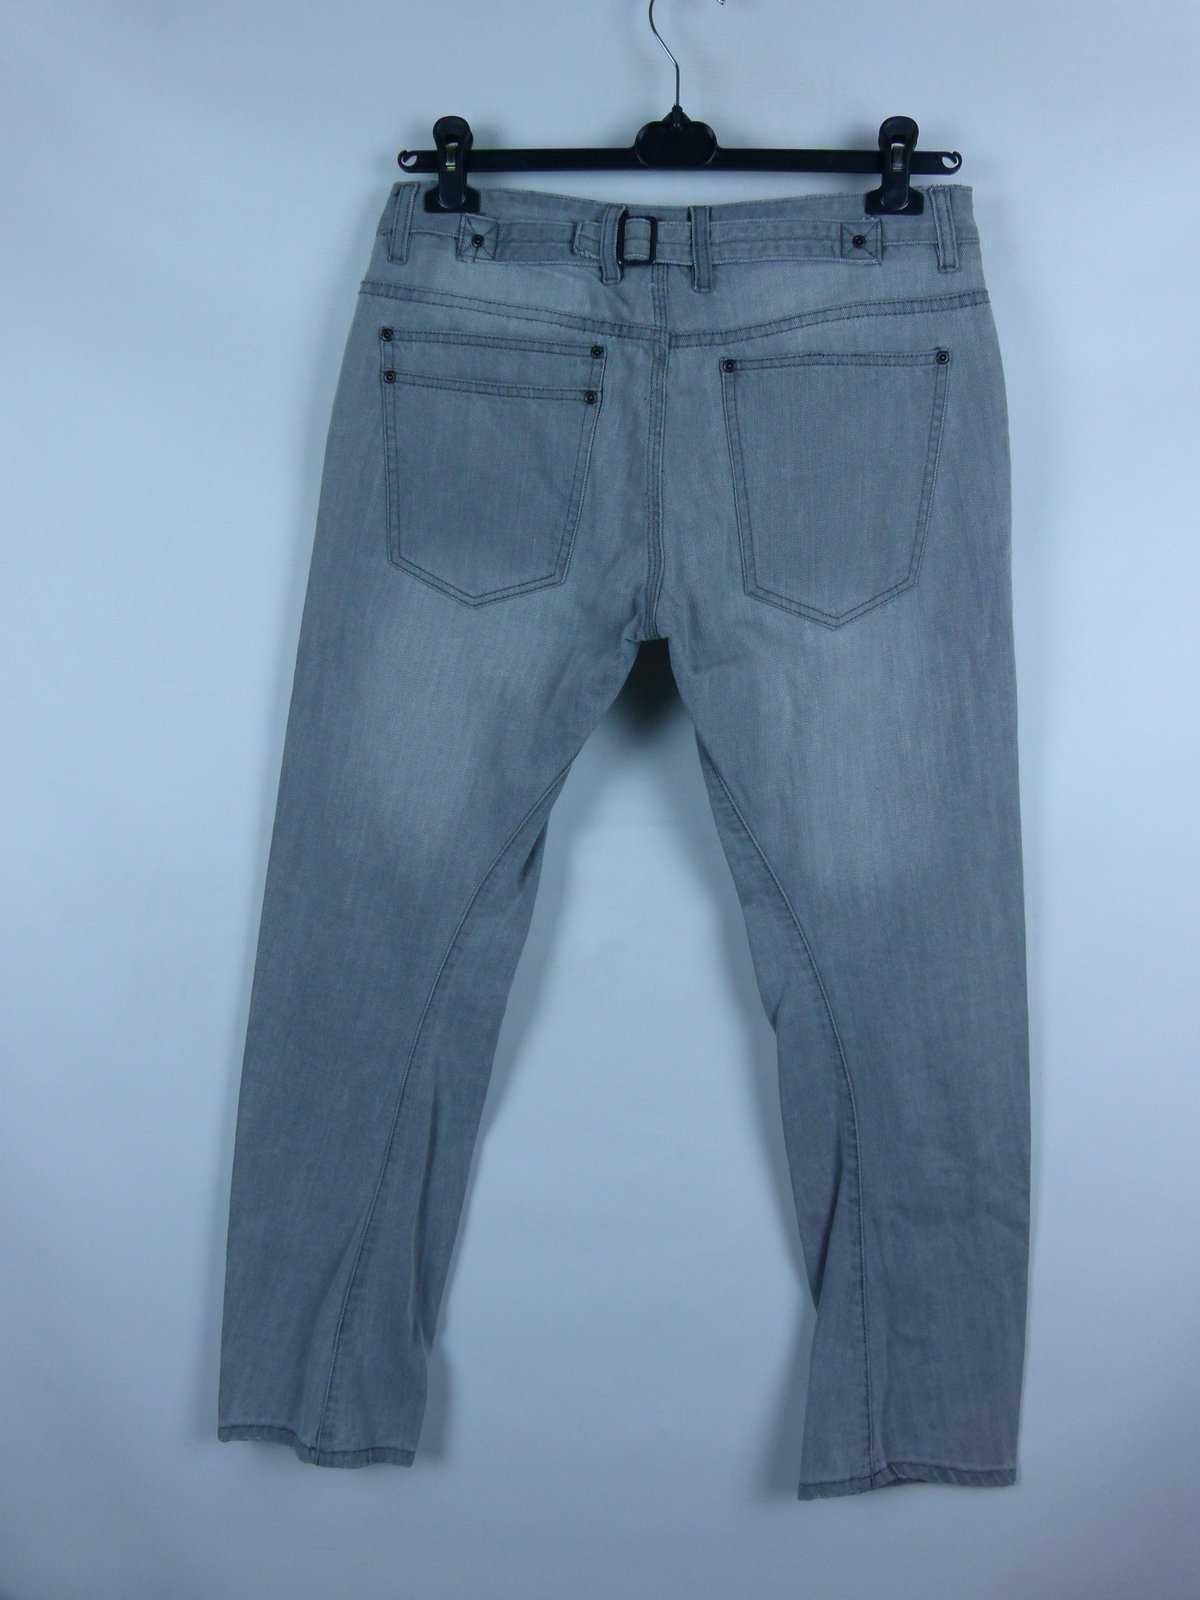 Topman szare spodnie skinny jeans / 34S